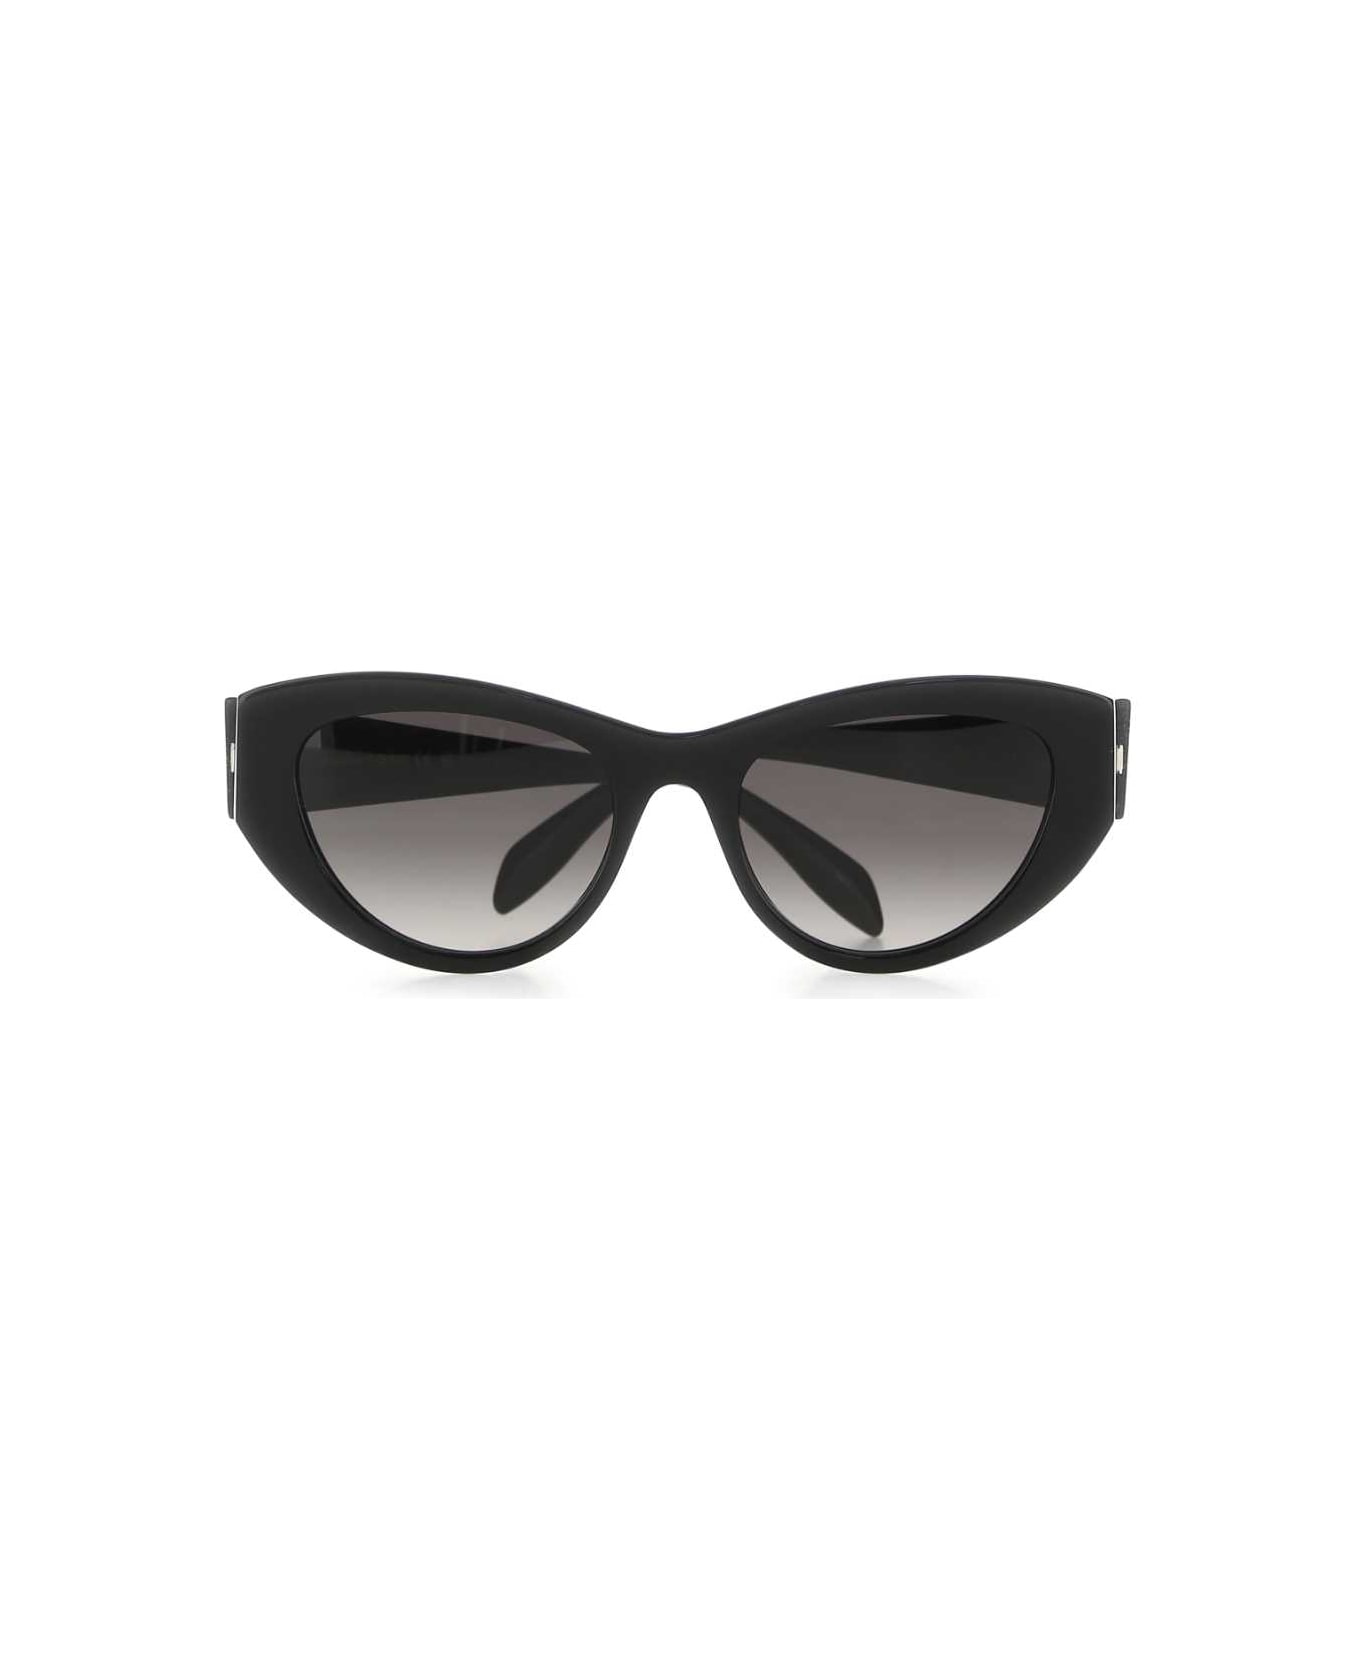 Alexander McQueen Black Acetate Sunglasses - 1053